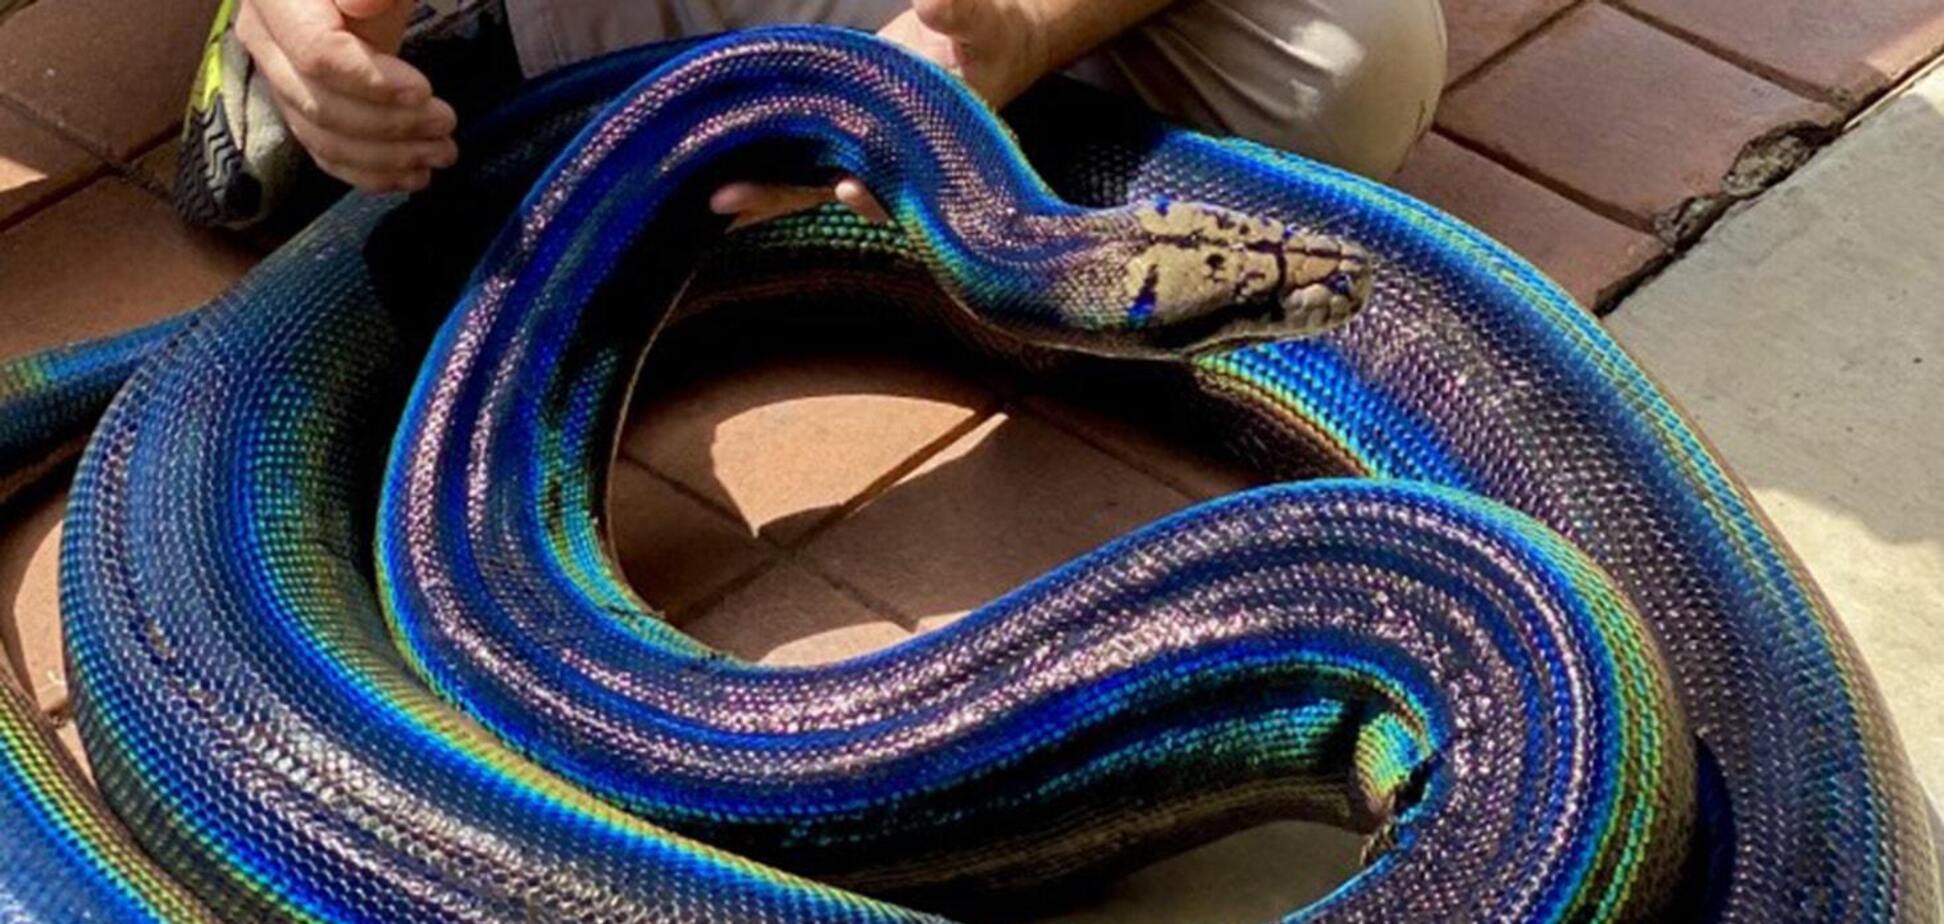 Змія з незвичайним забарвленням із США